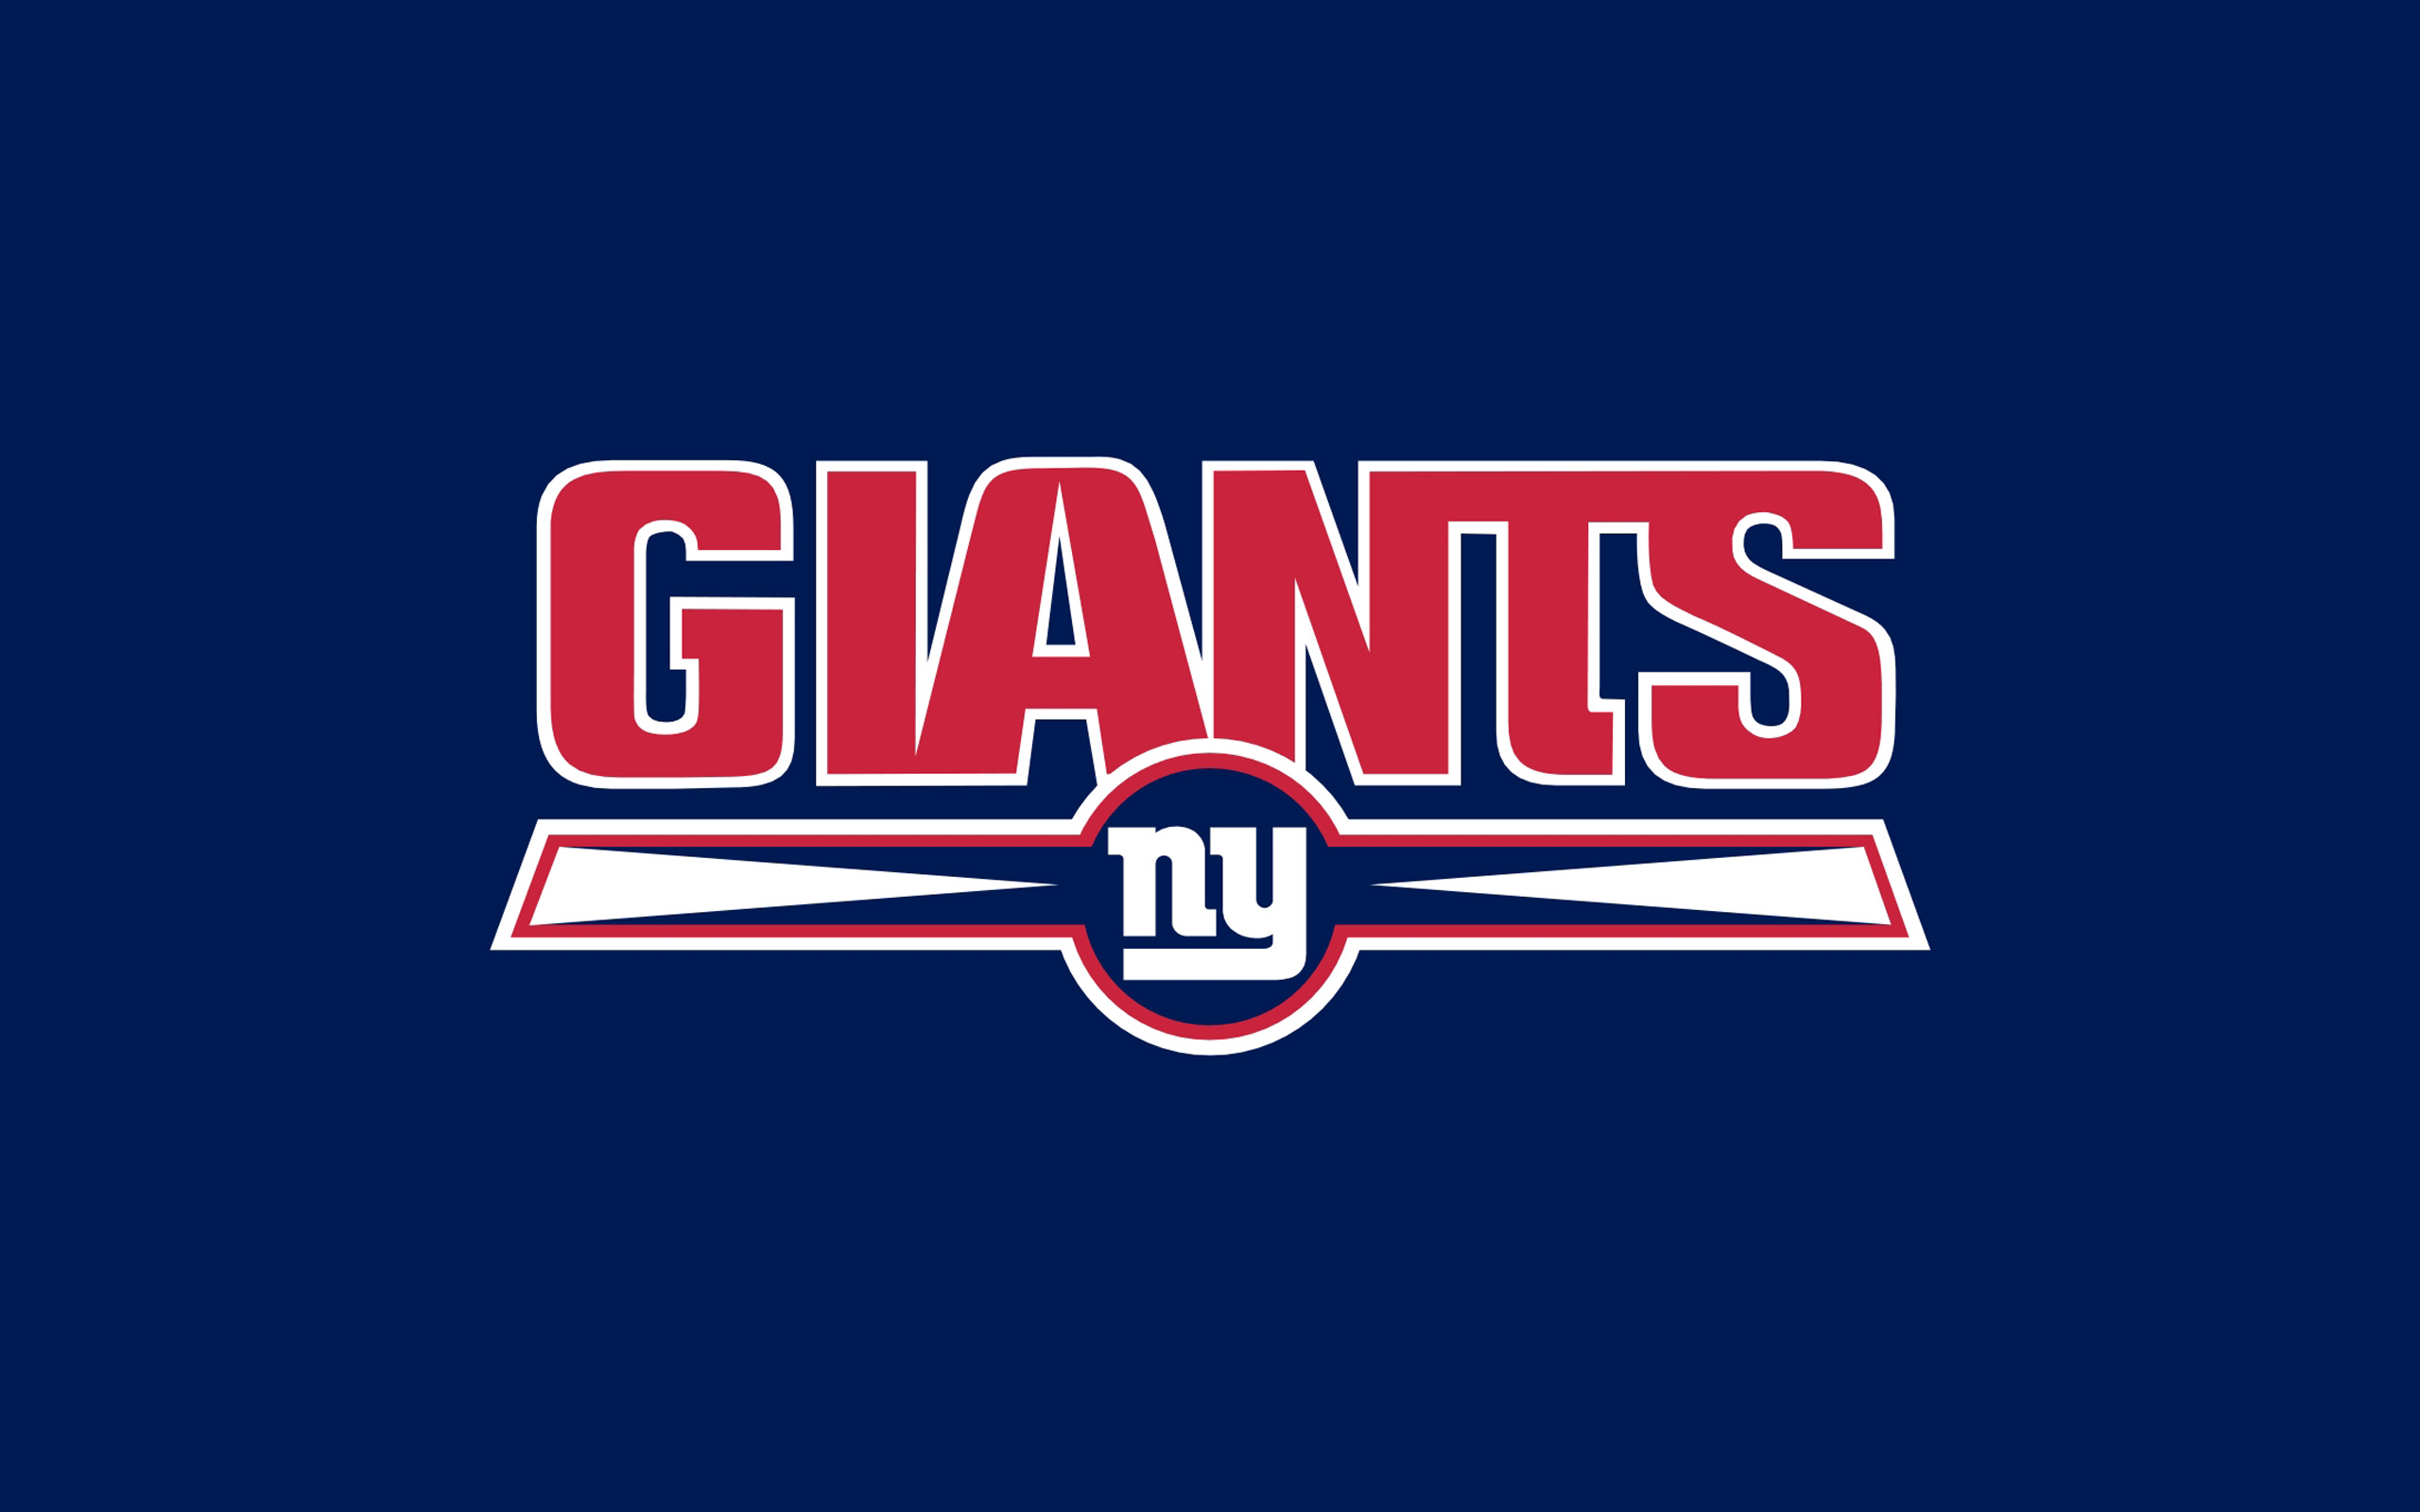 New York Giants Puter Wallpaper Desktop Background